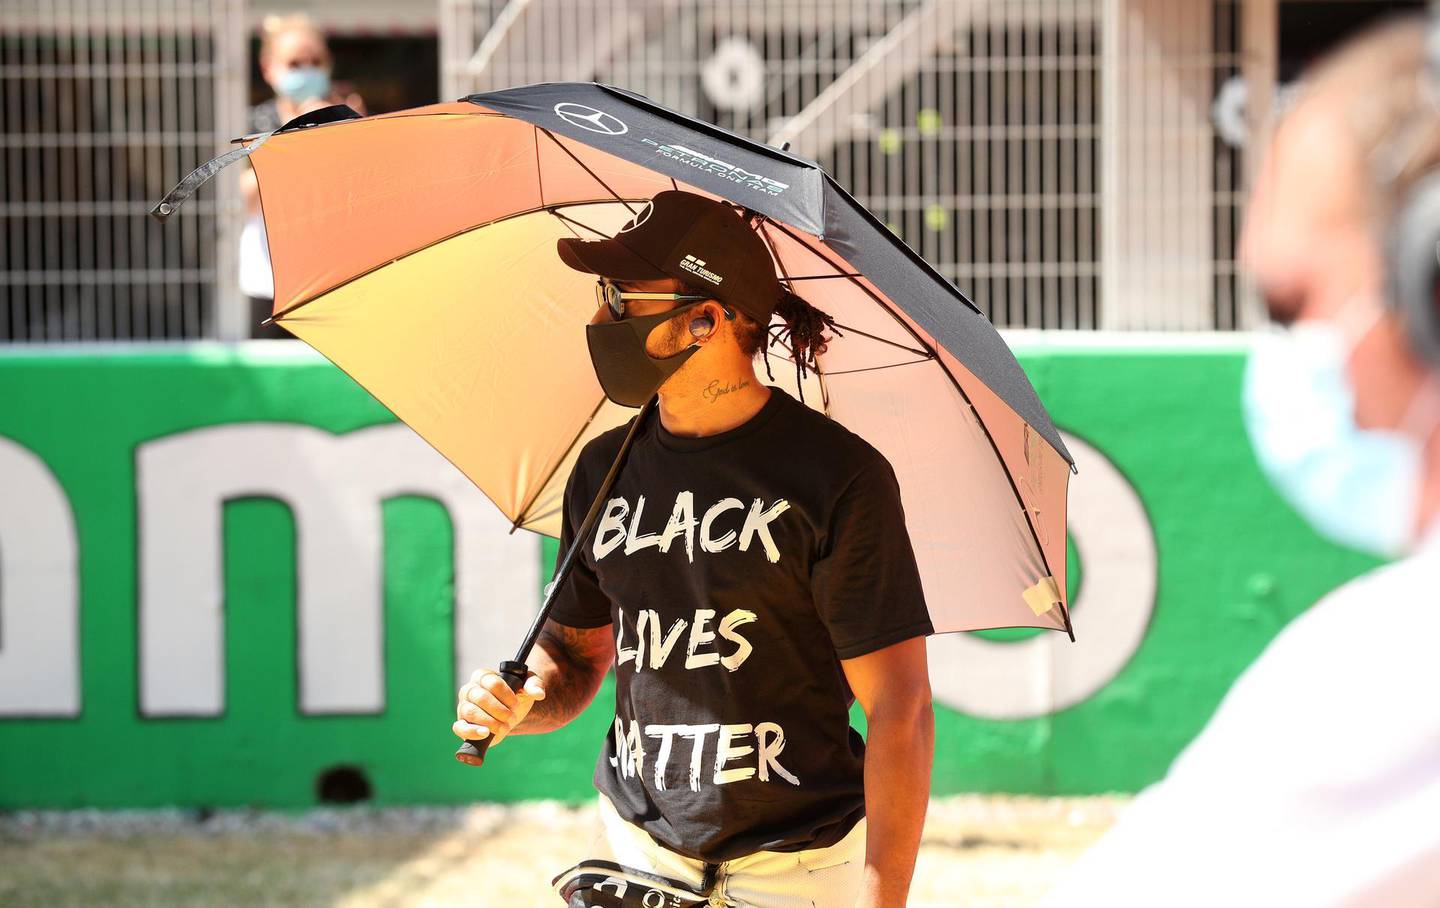 BARCELONA, SPANIEN – 16. AUGUST: Lewis Hamilton aus Großbritannien und Mercedes GP ist vor dem F1 Grand Prix von Spanien auf dem Circuit de Barcelona-Catalunya am 16. August 2020 in der Startaufstellung mit einem „Black Lives Matter“-T-Shirt zu sehen Barcelona, ​​Spanien.  (Foto von Albert Gea/Pool über Getty Images)